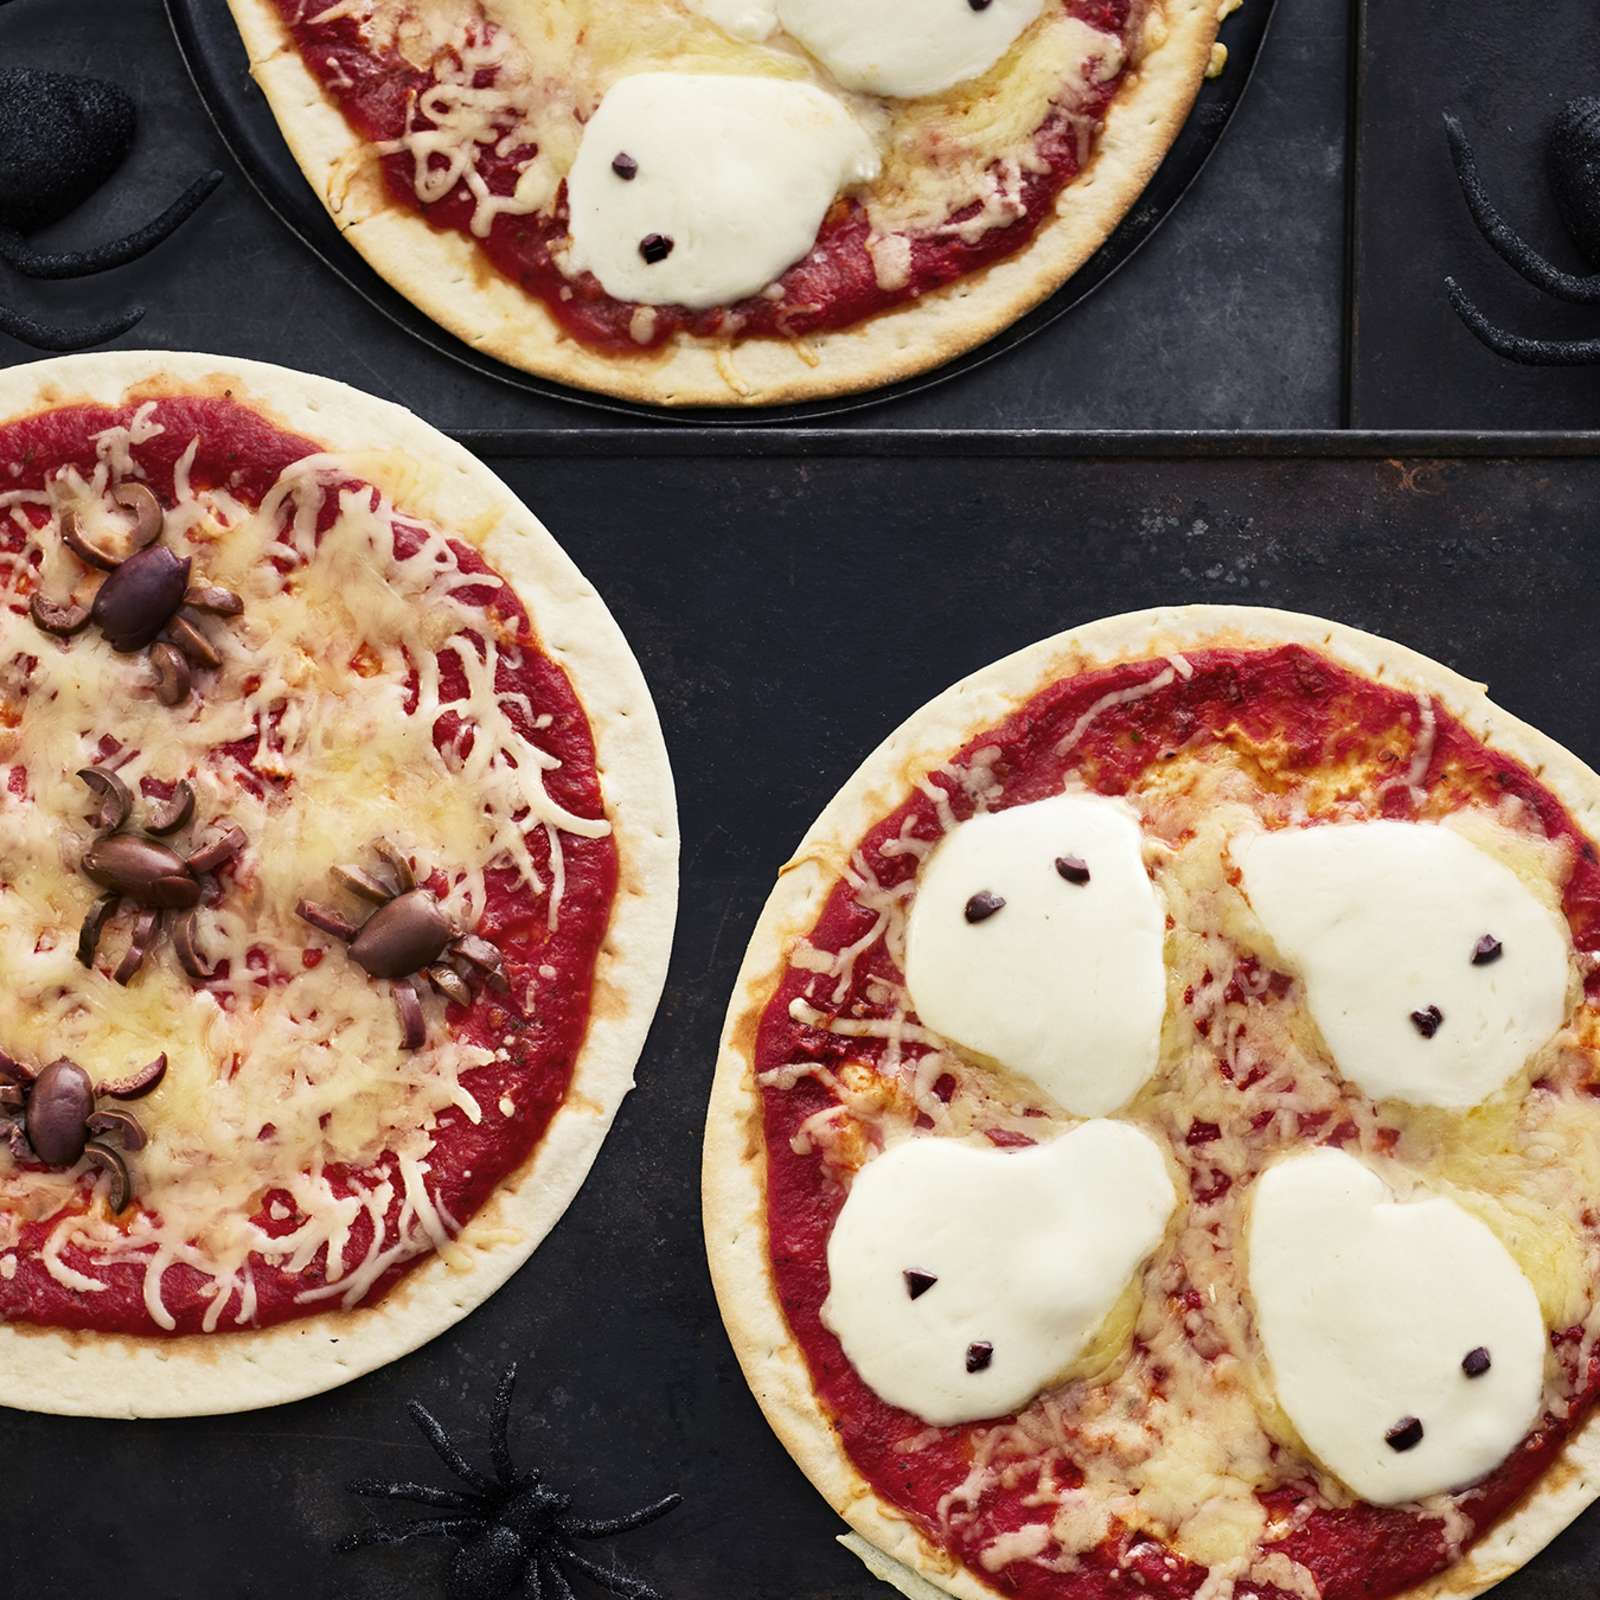 Halloweeniin sopivia pizzoja, joiden päälle asetellut oliivit muistuttavat hämähäkkejä ja mozzarellaviipaleet haamuja.